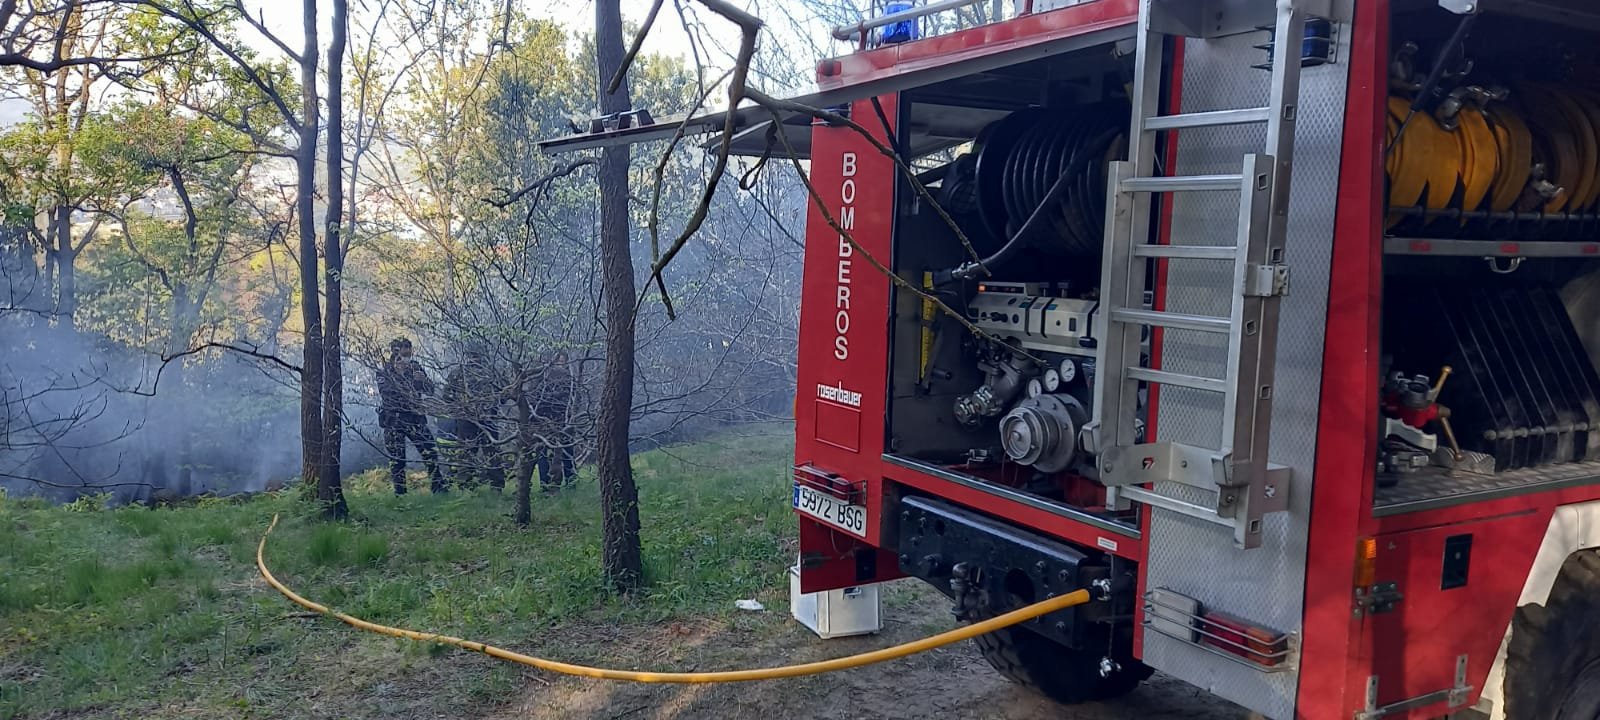 Ulia2 - Los bomberos sofocan un incendio en Ulia